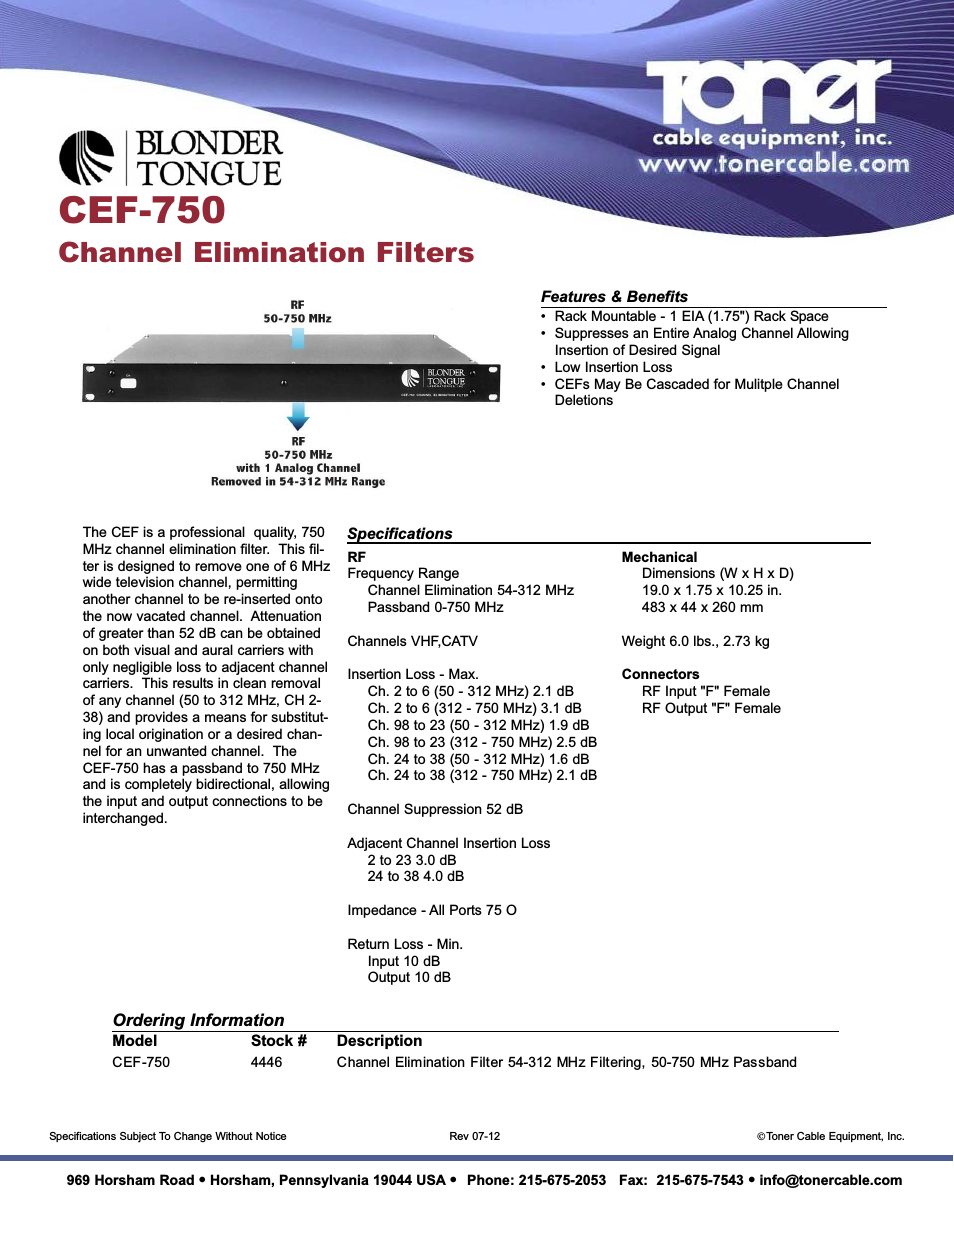 CEF-750 Channel Elimination Filter